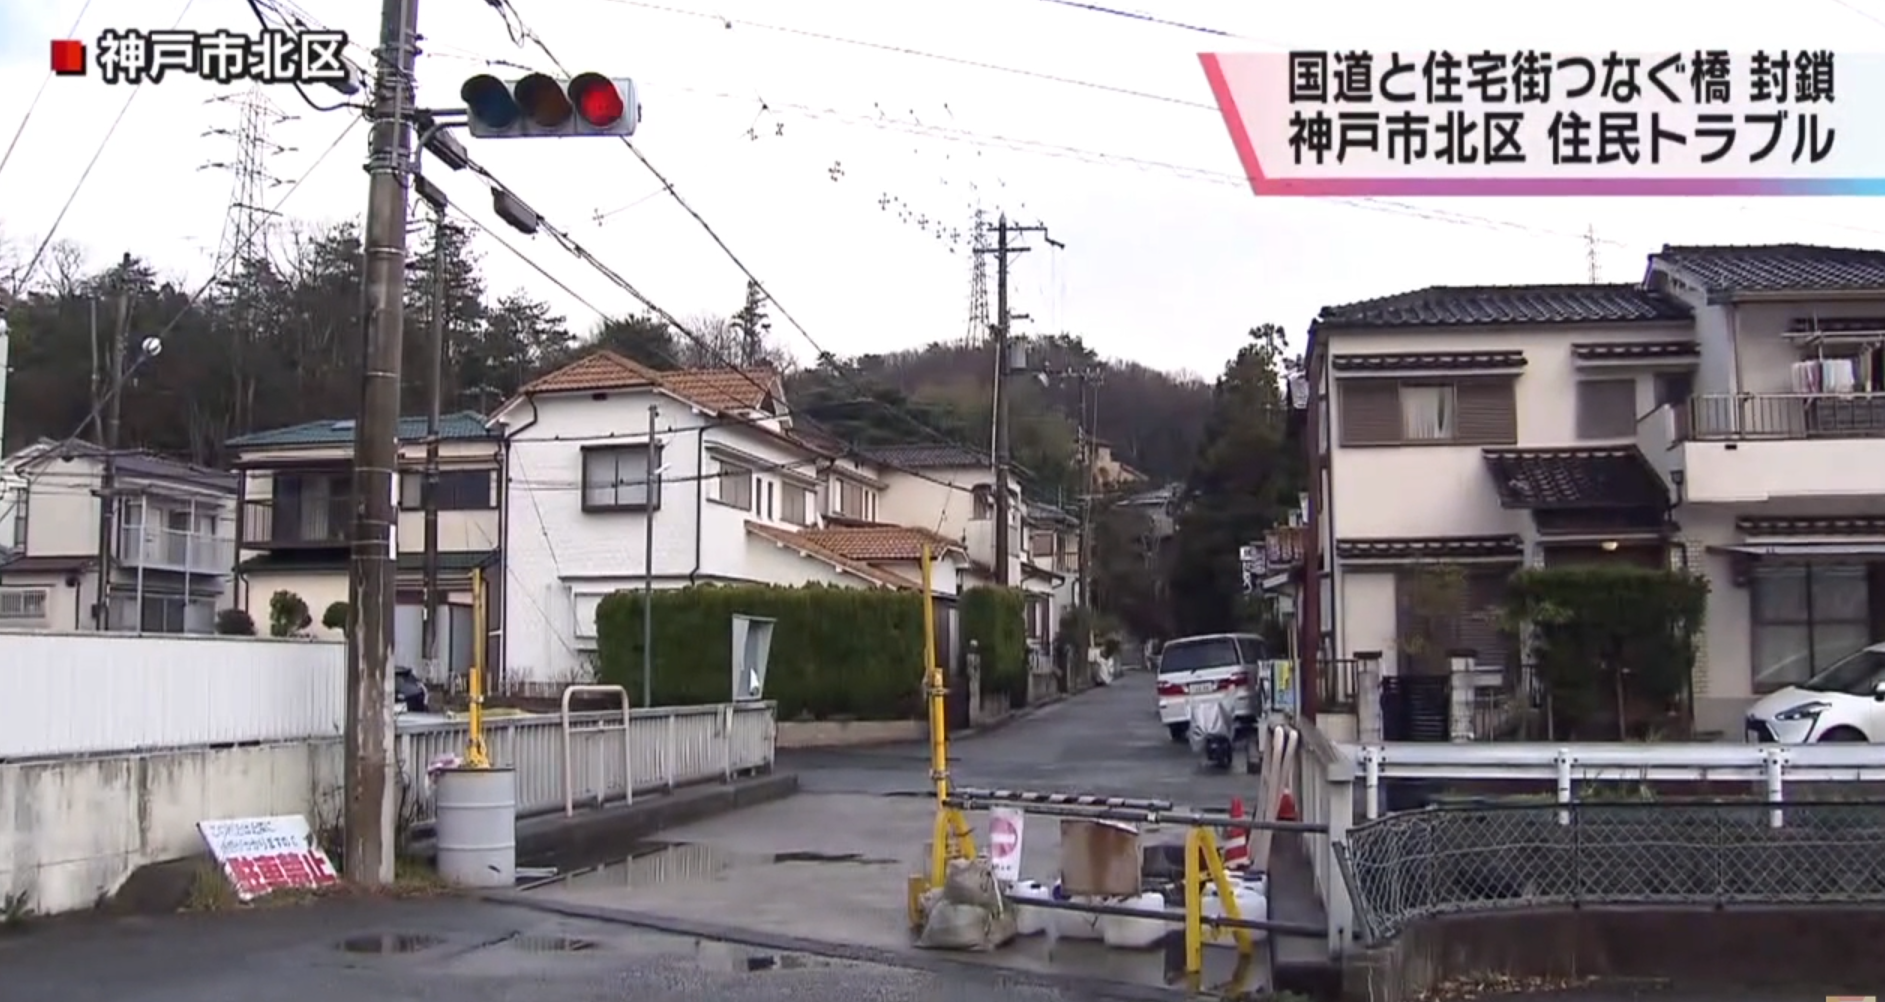 Bairro de Kobe fica fechado, após dono bloquear única ponte de acesso